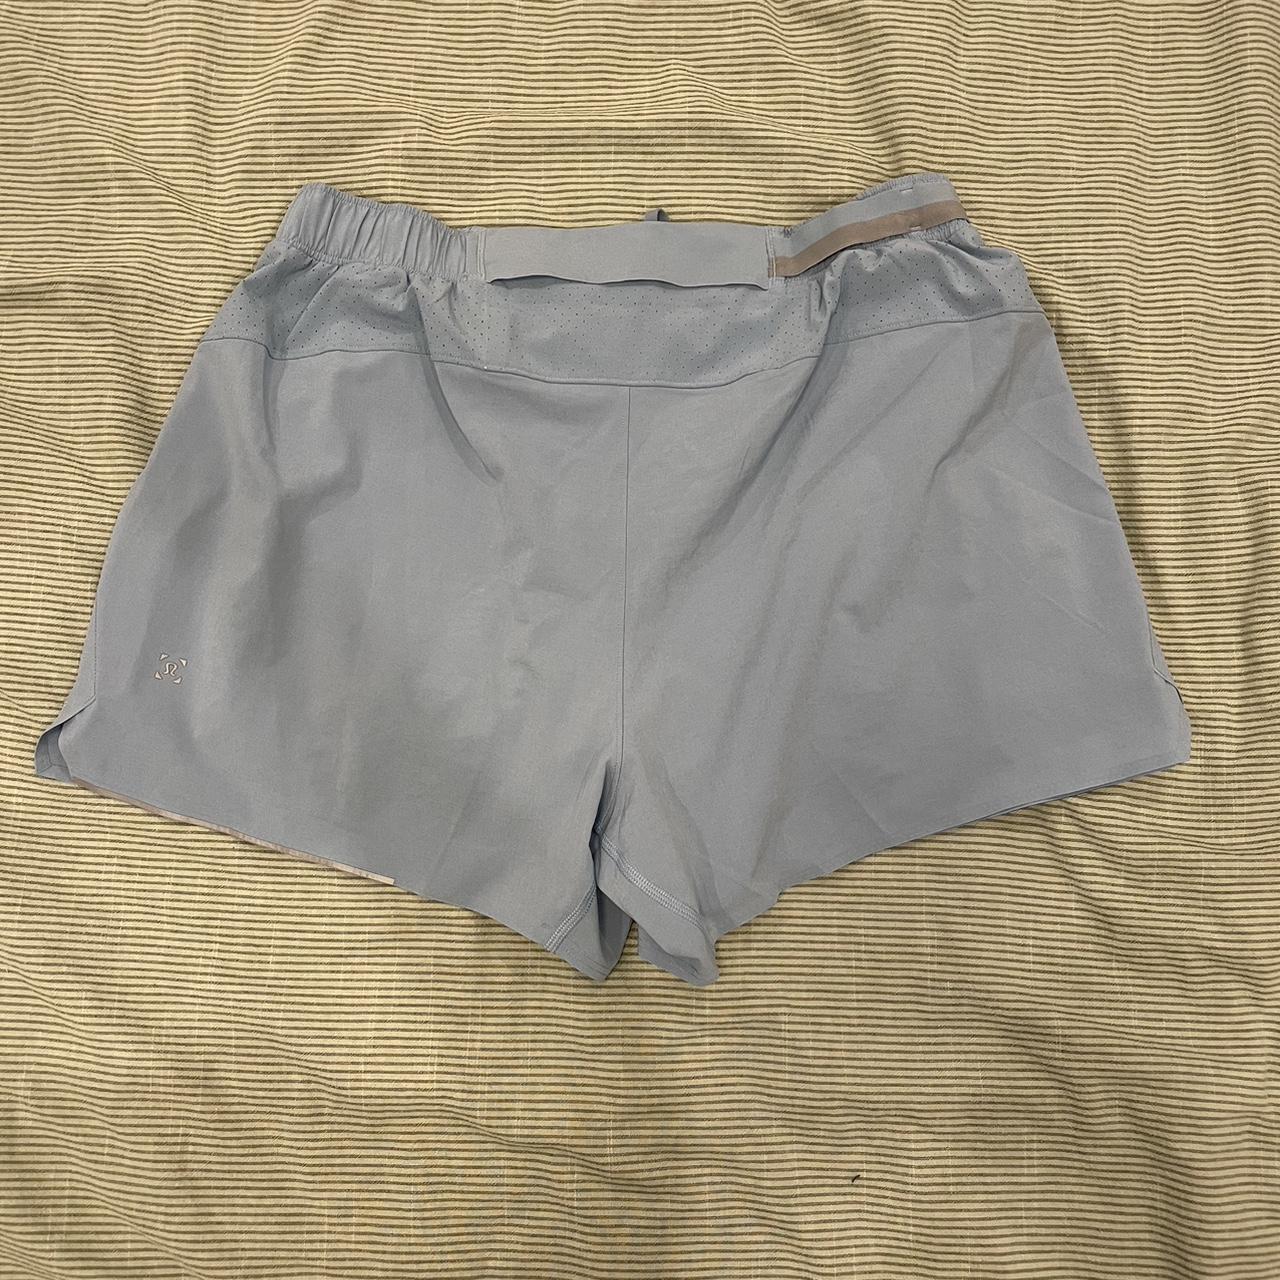 Lululemon Men's Blue Shorts (2)